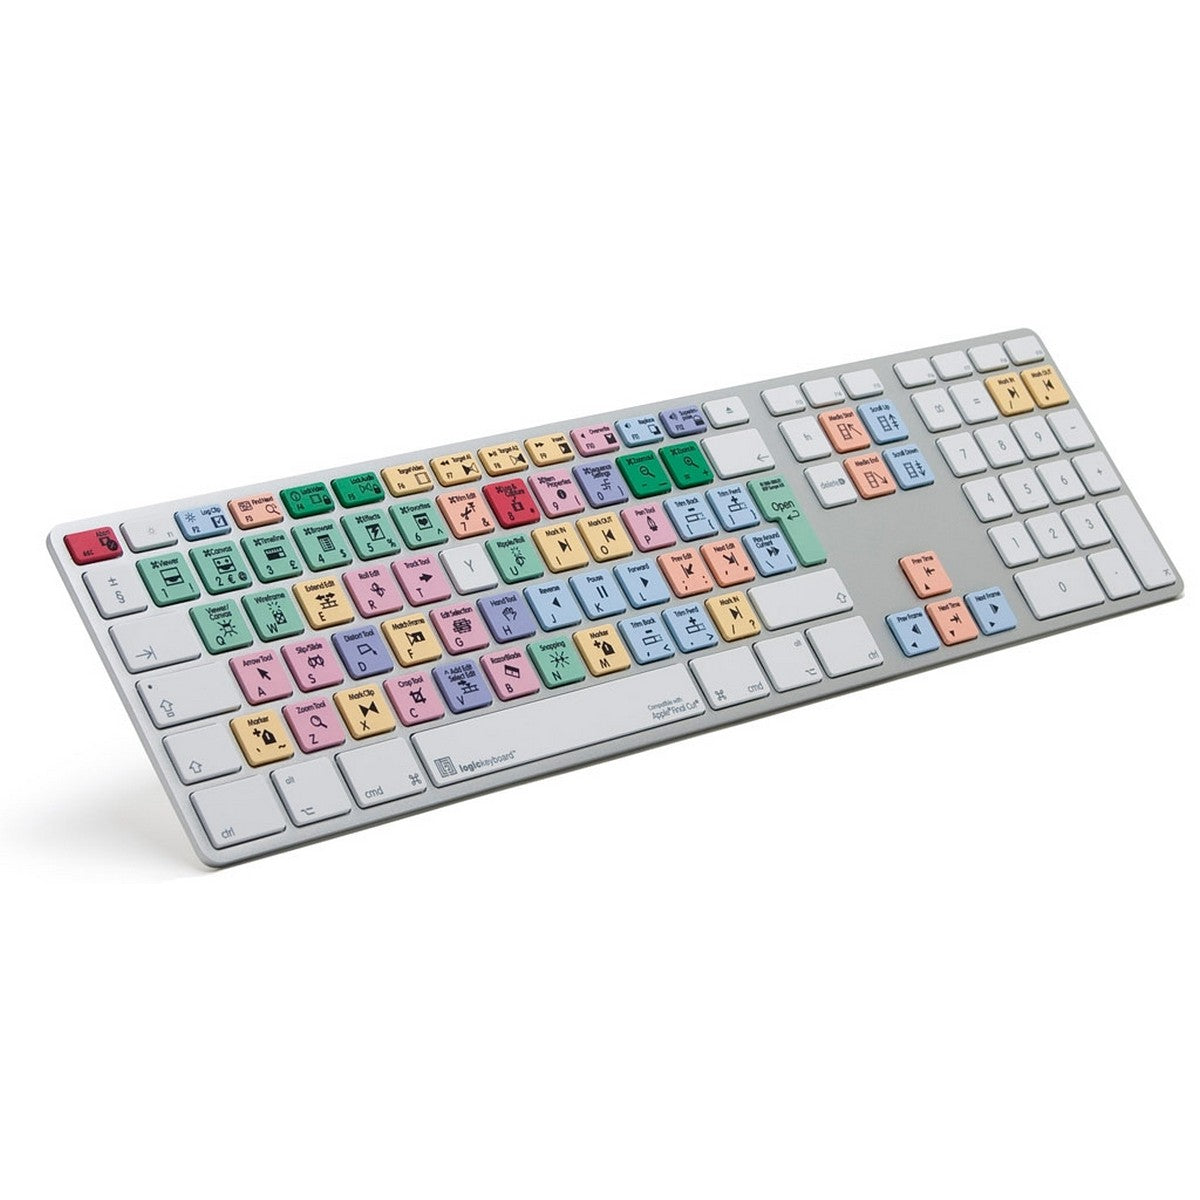 Logickeyboard Final Cut Pro/Express 7 Apple Pro Alu Keyboard | Full Size Shortcut Keyboard for Final Cut Pro Express